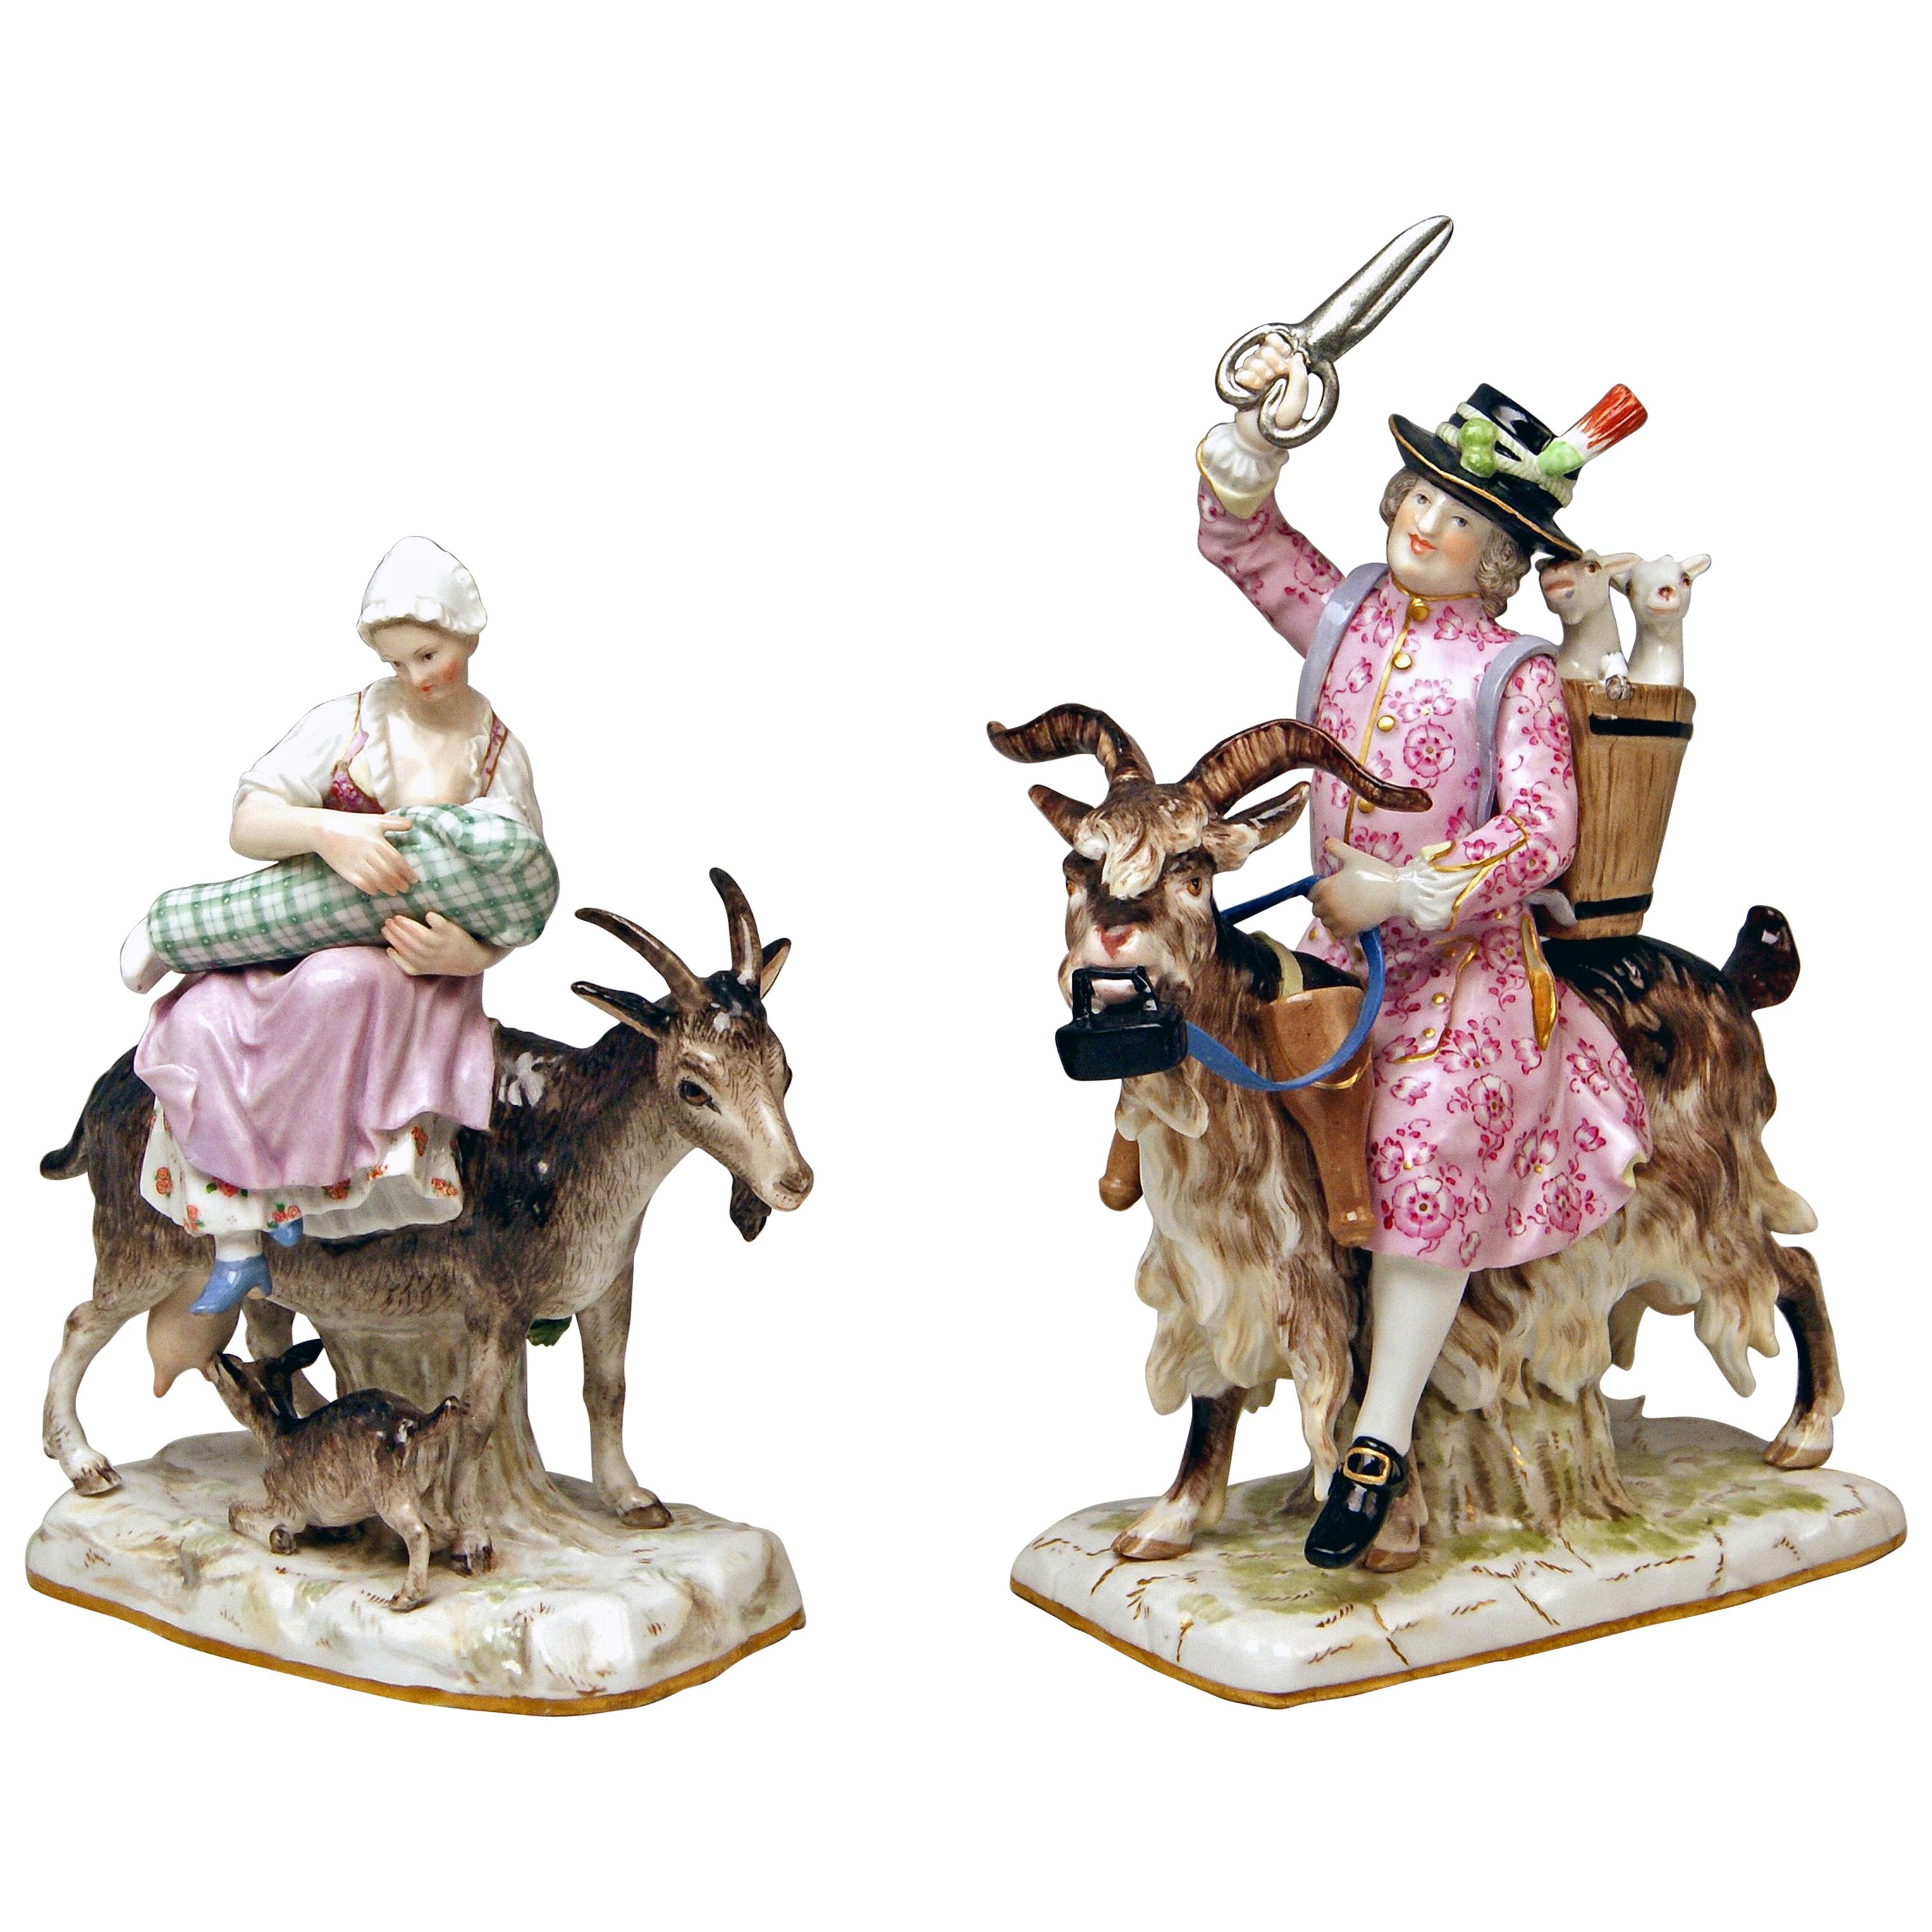 Meissen Tailor & Wife of Tailor on Goat Models 171 155 by Kaendler Eberlein 1860